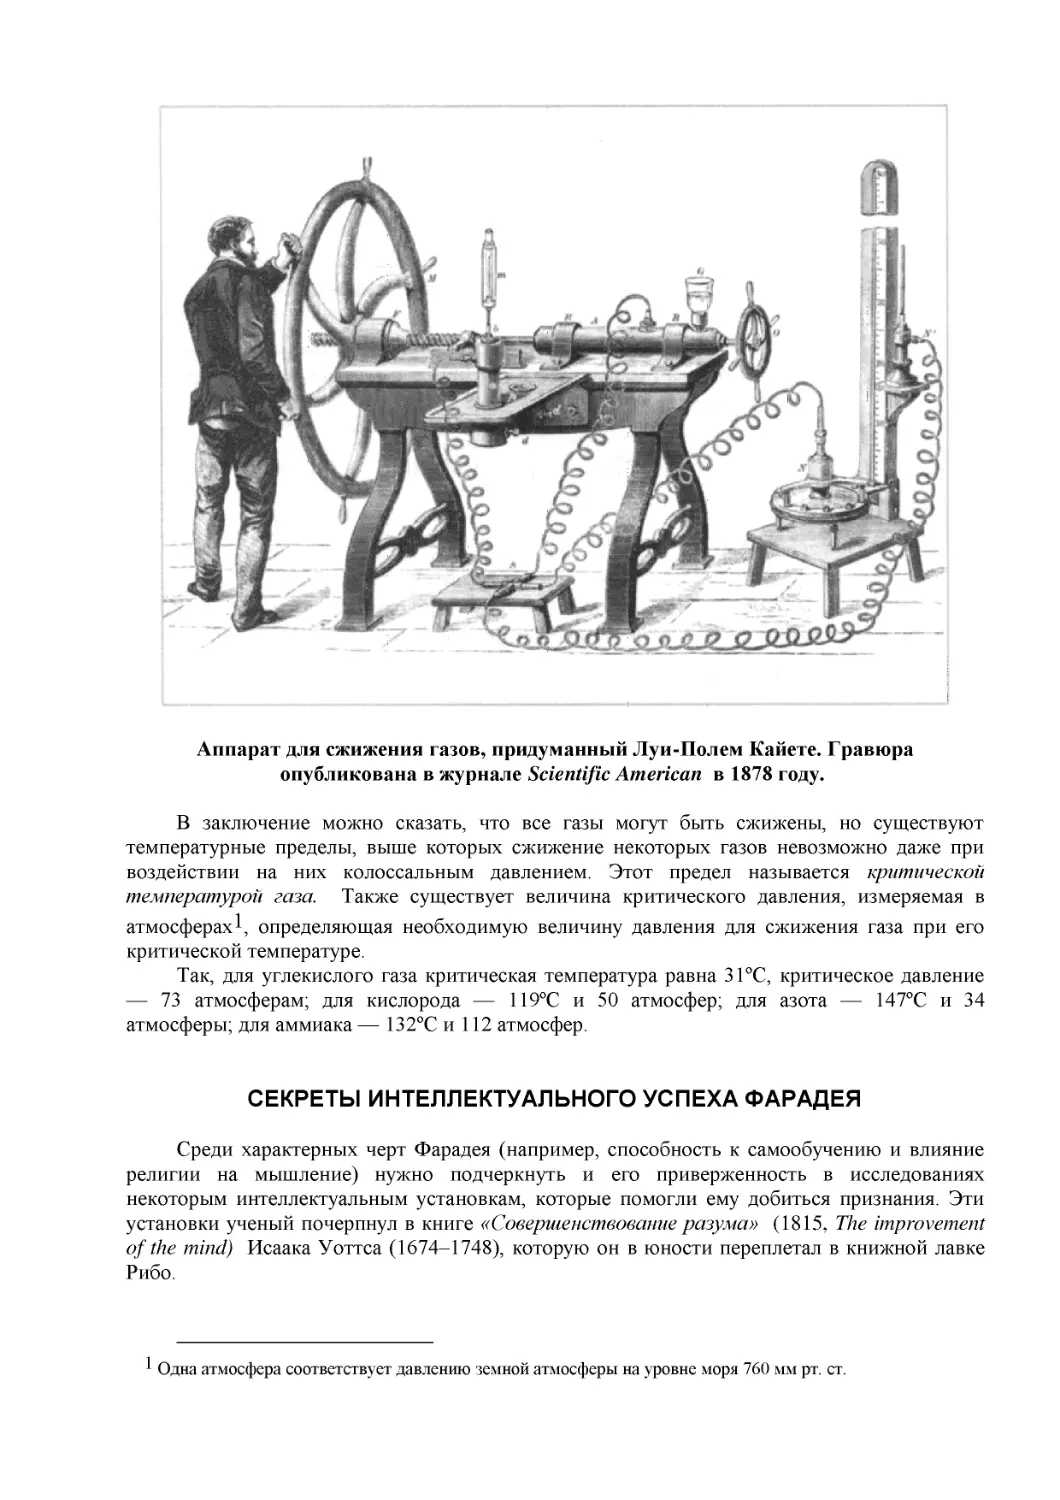 Аппарат для сжижения газов, придуманный Луи-Полем Кайете. Гравюра опубликована в журнале Scientific American  в 1878 году.
СЕКРЕТЫ ИНТЕЛЛЕКТУАЛЬНОГО УСПЕХА ФАРАДЕЯ